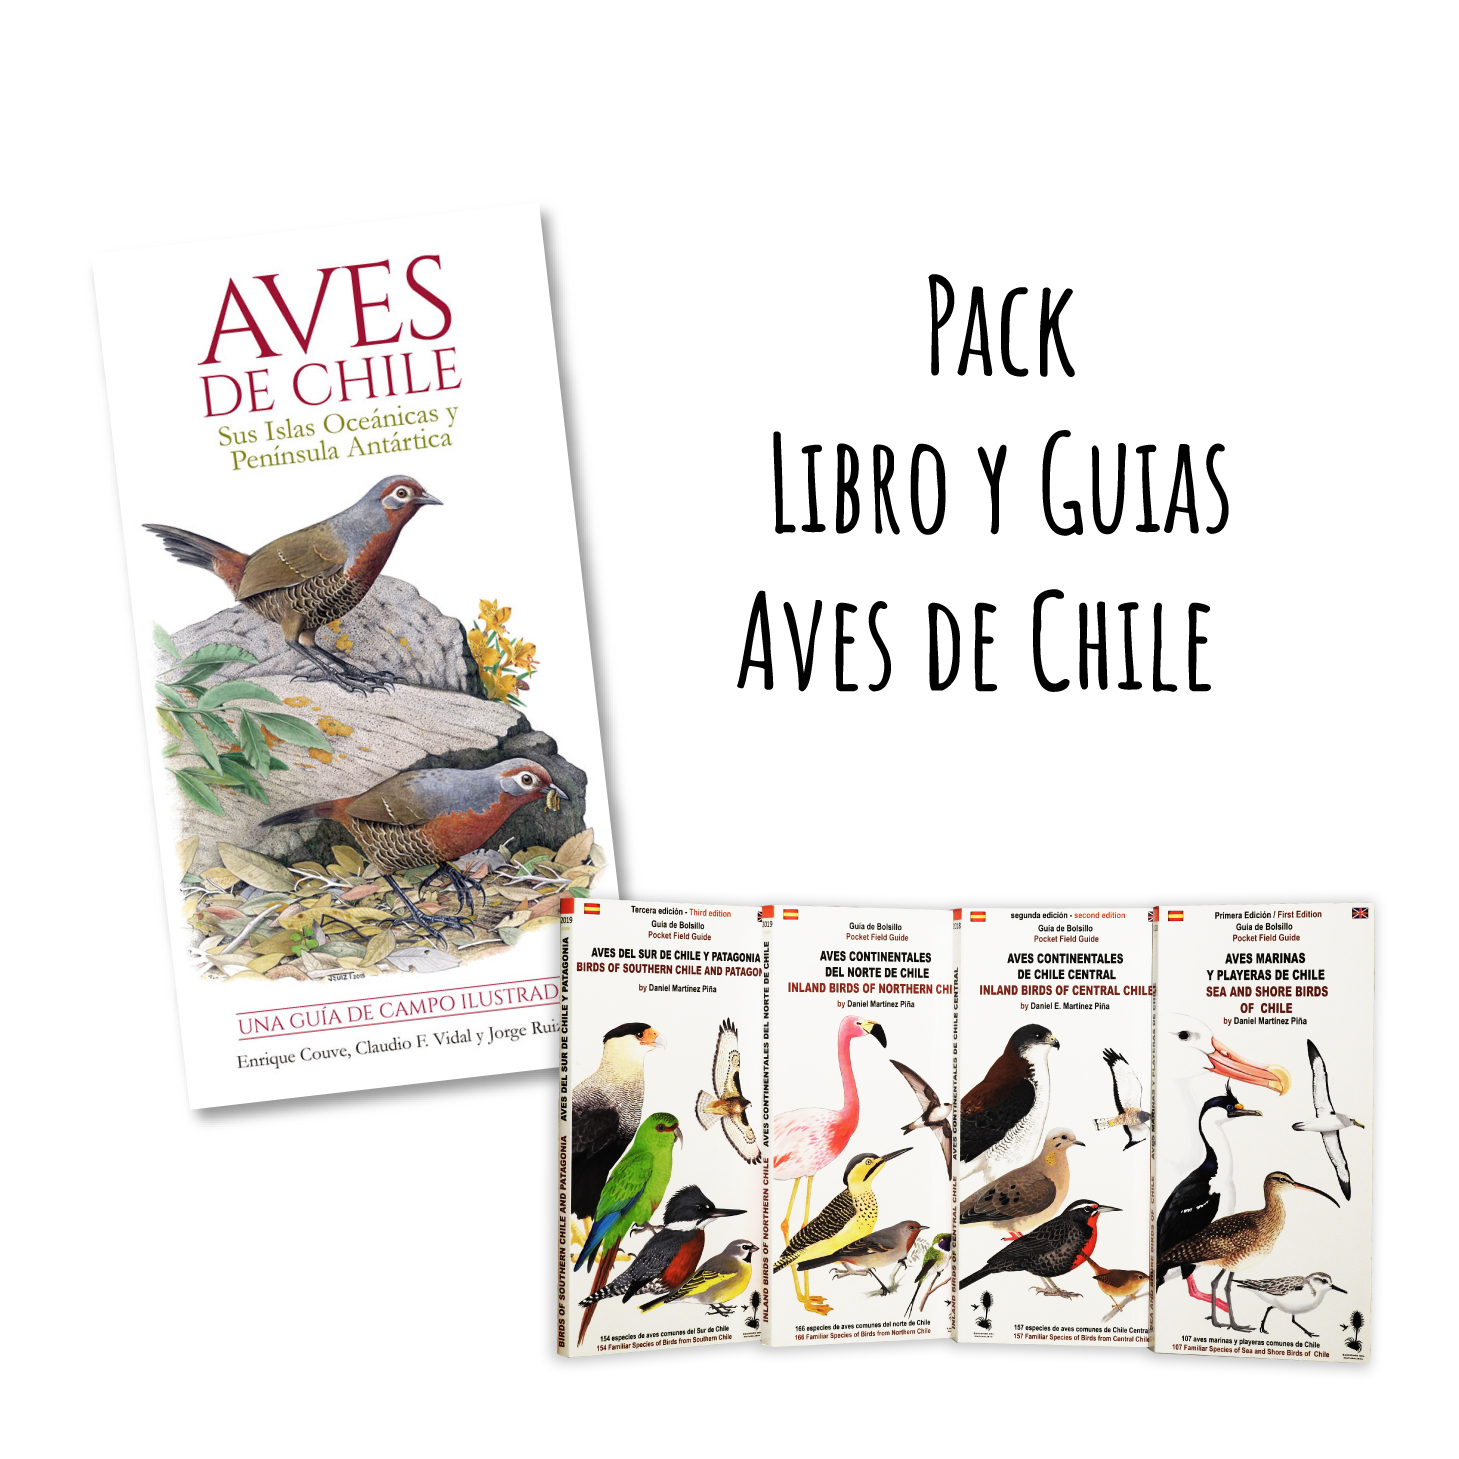 Pack Libro y Guias Aves de Chile (Despachos de...